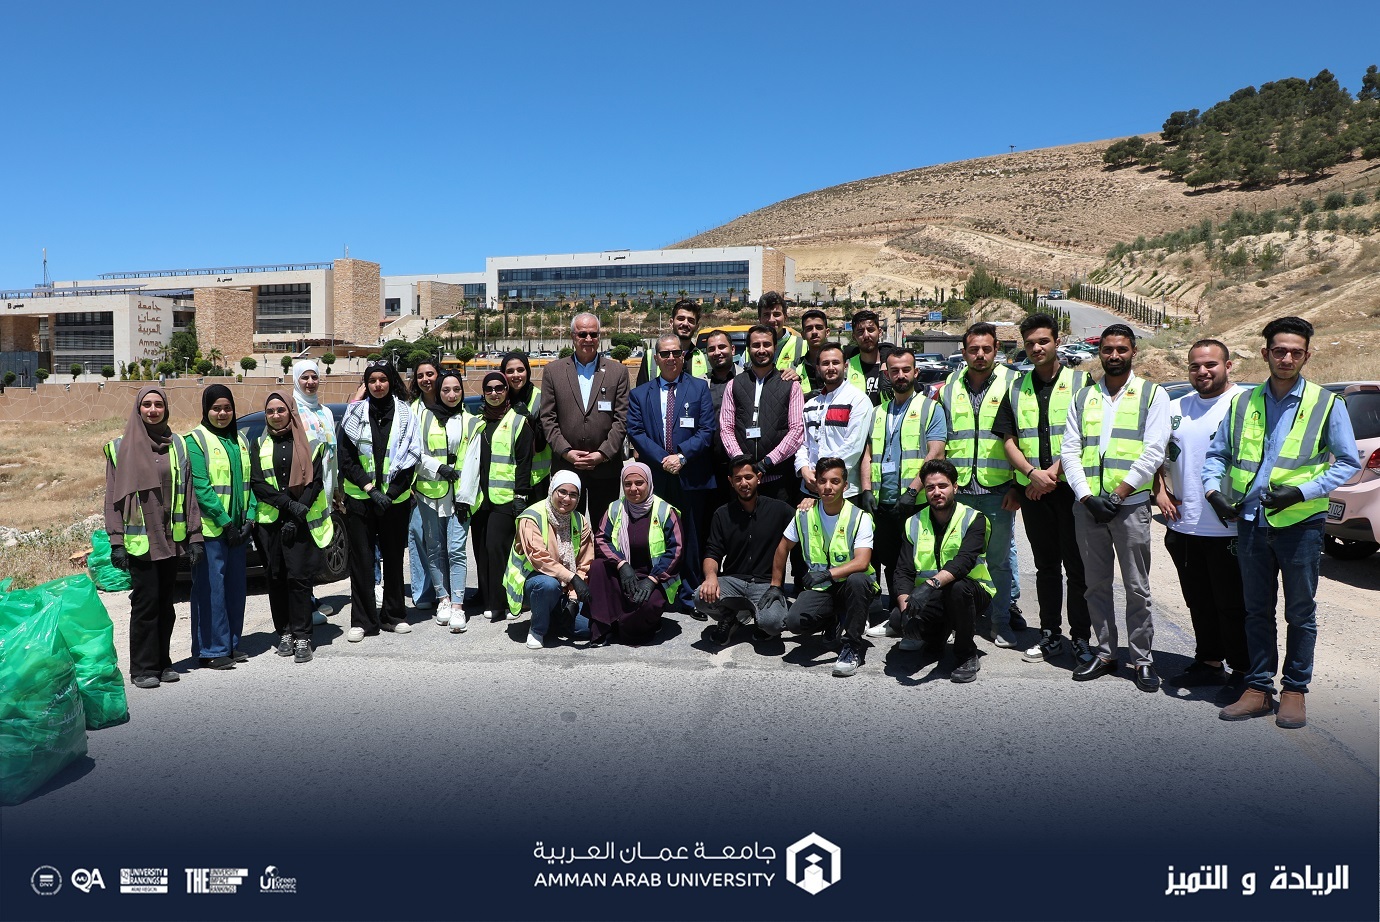 مبادرة "جامعتي بيتي" في جامعة عمان العربية